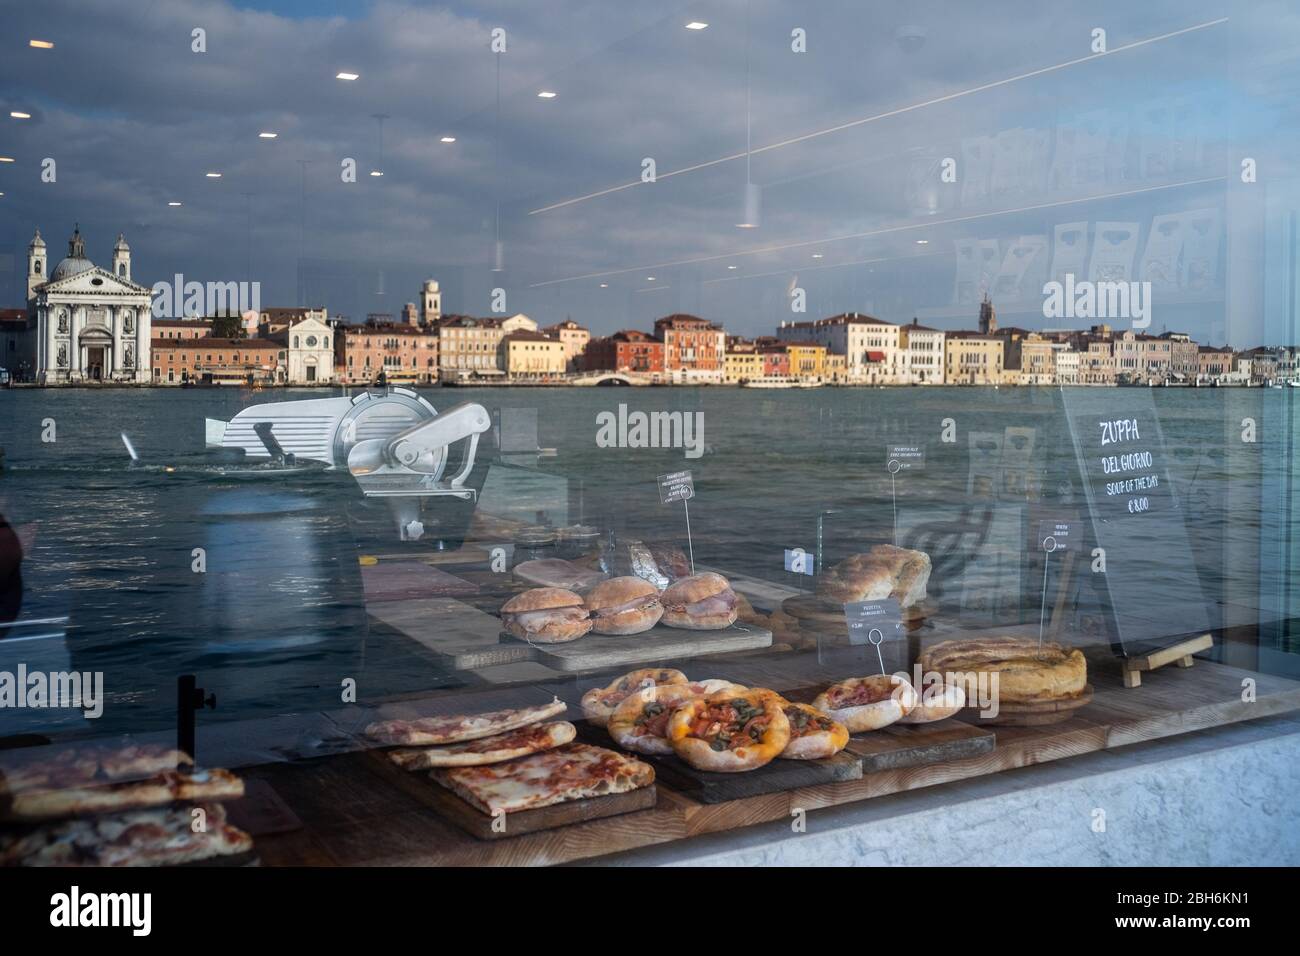 VENEZIA, ITALIA - APRILE 2020: Canali calmi e riflessioni di un negozio chiuso durante la chiusura nazionale per la pandemia Covid-19. Foto Stock